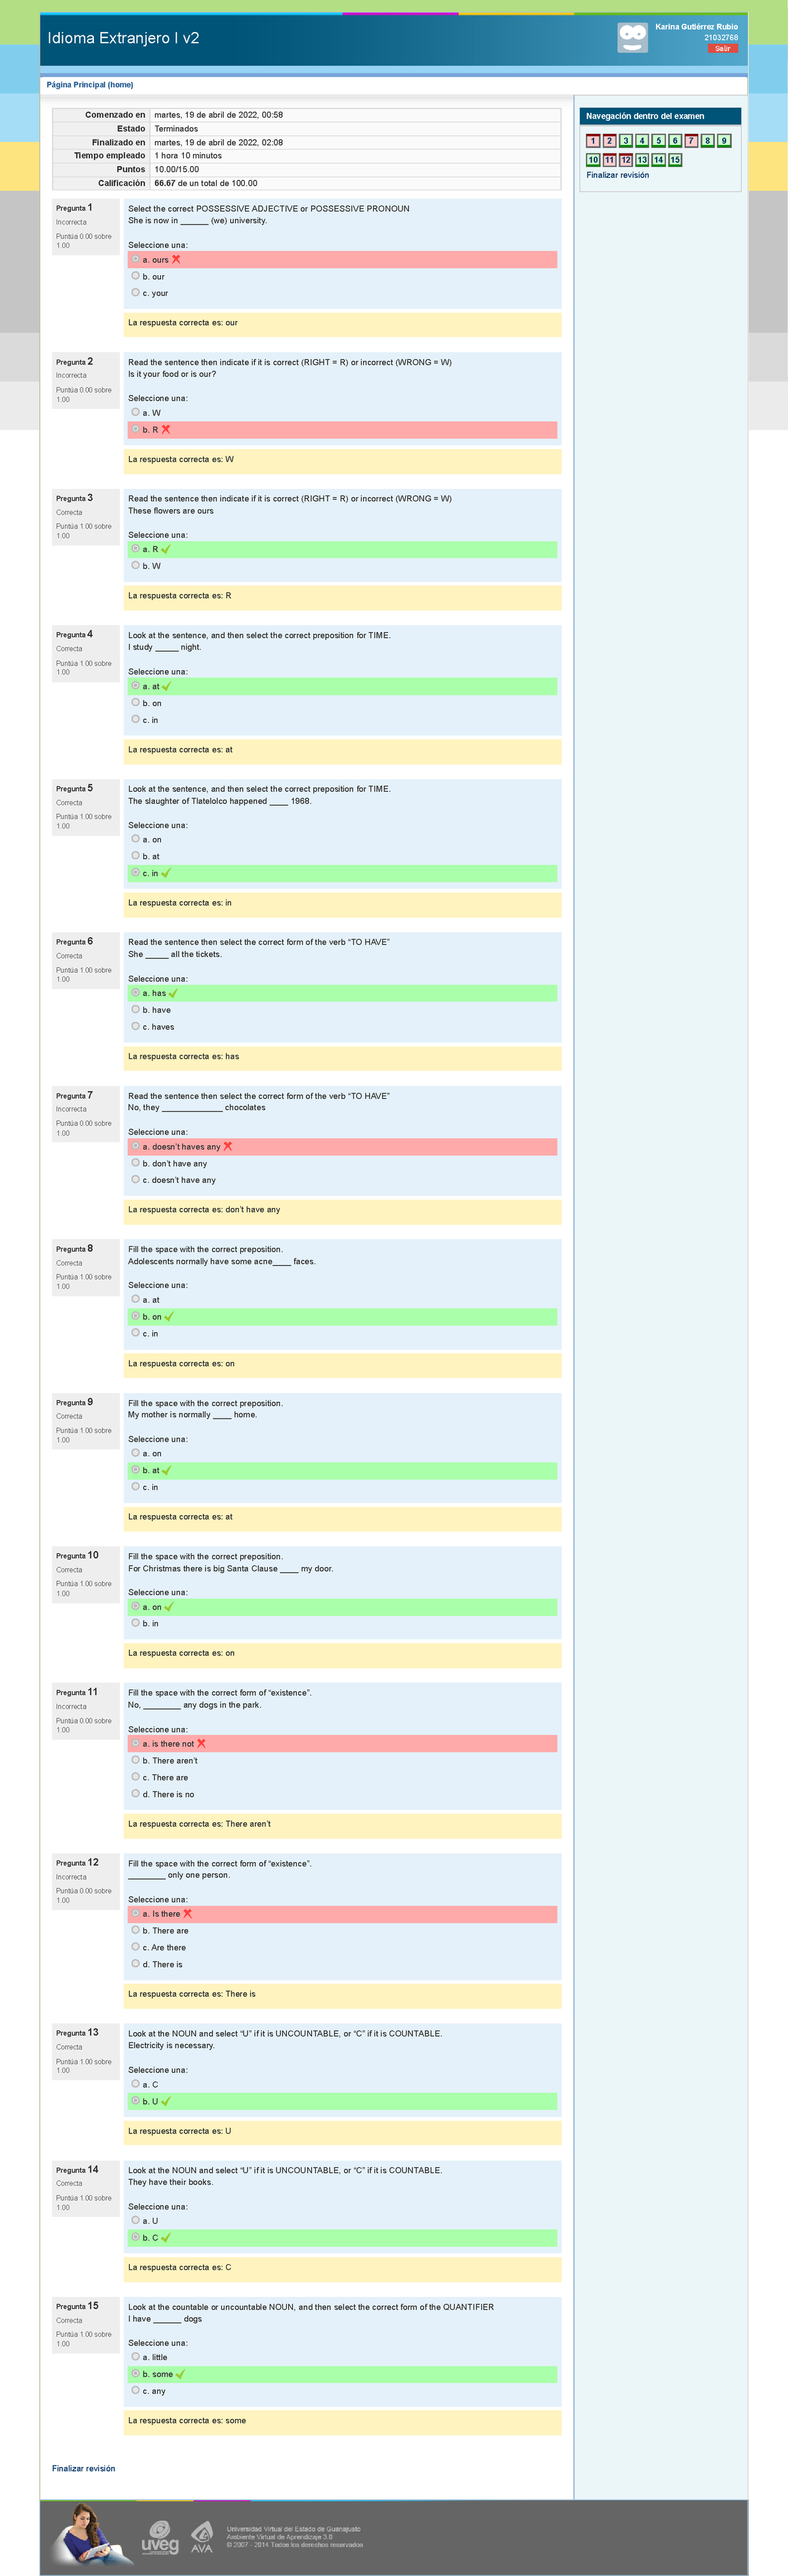 Kudasai on X: La plataforma Crunchyroll condujo una encuesta entre sus  usuarios preguntándoles cuál consideran la mejor secuencia de apertura de  la temporada de Otoño-2021 (Octubre-Diciembre), aunque cabe mencionar que  Crunchyroll solo